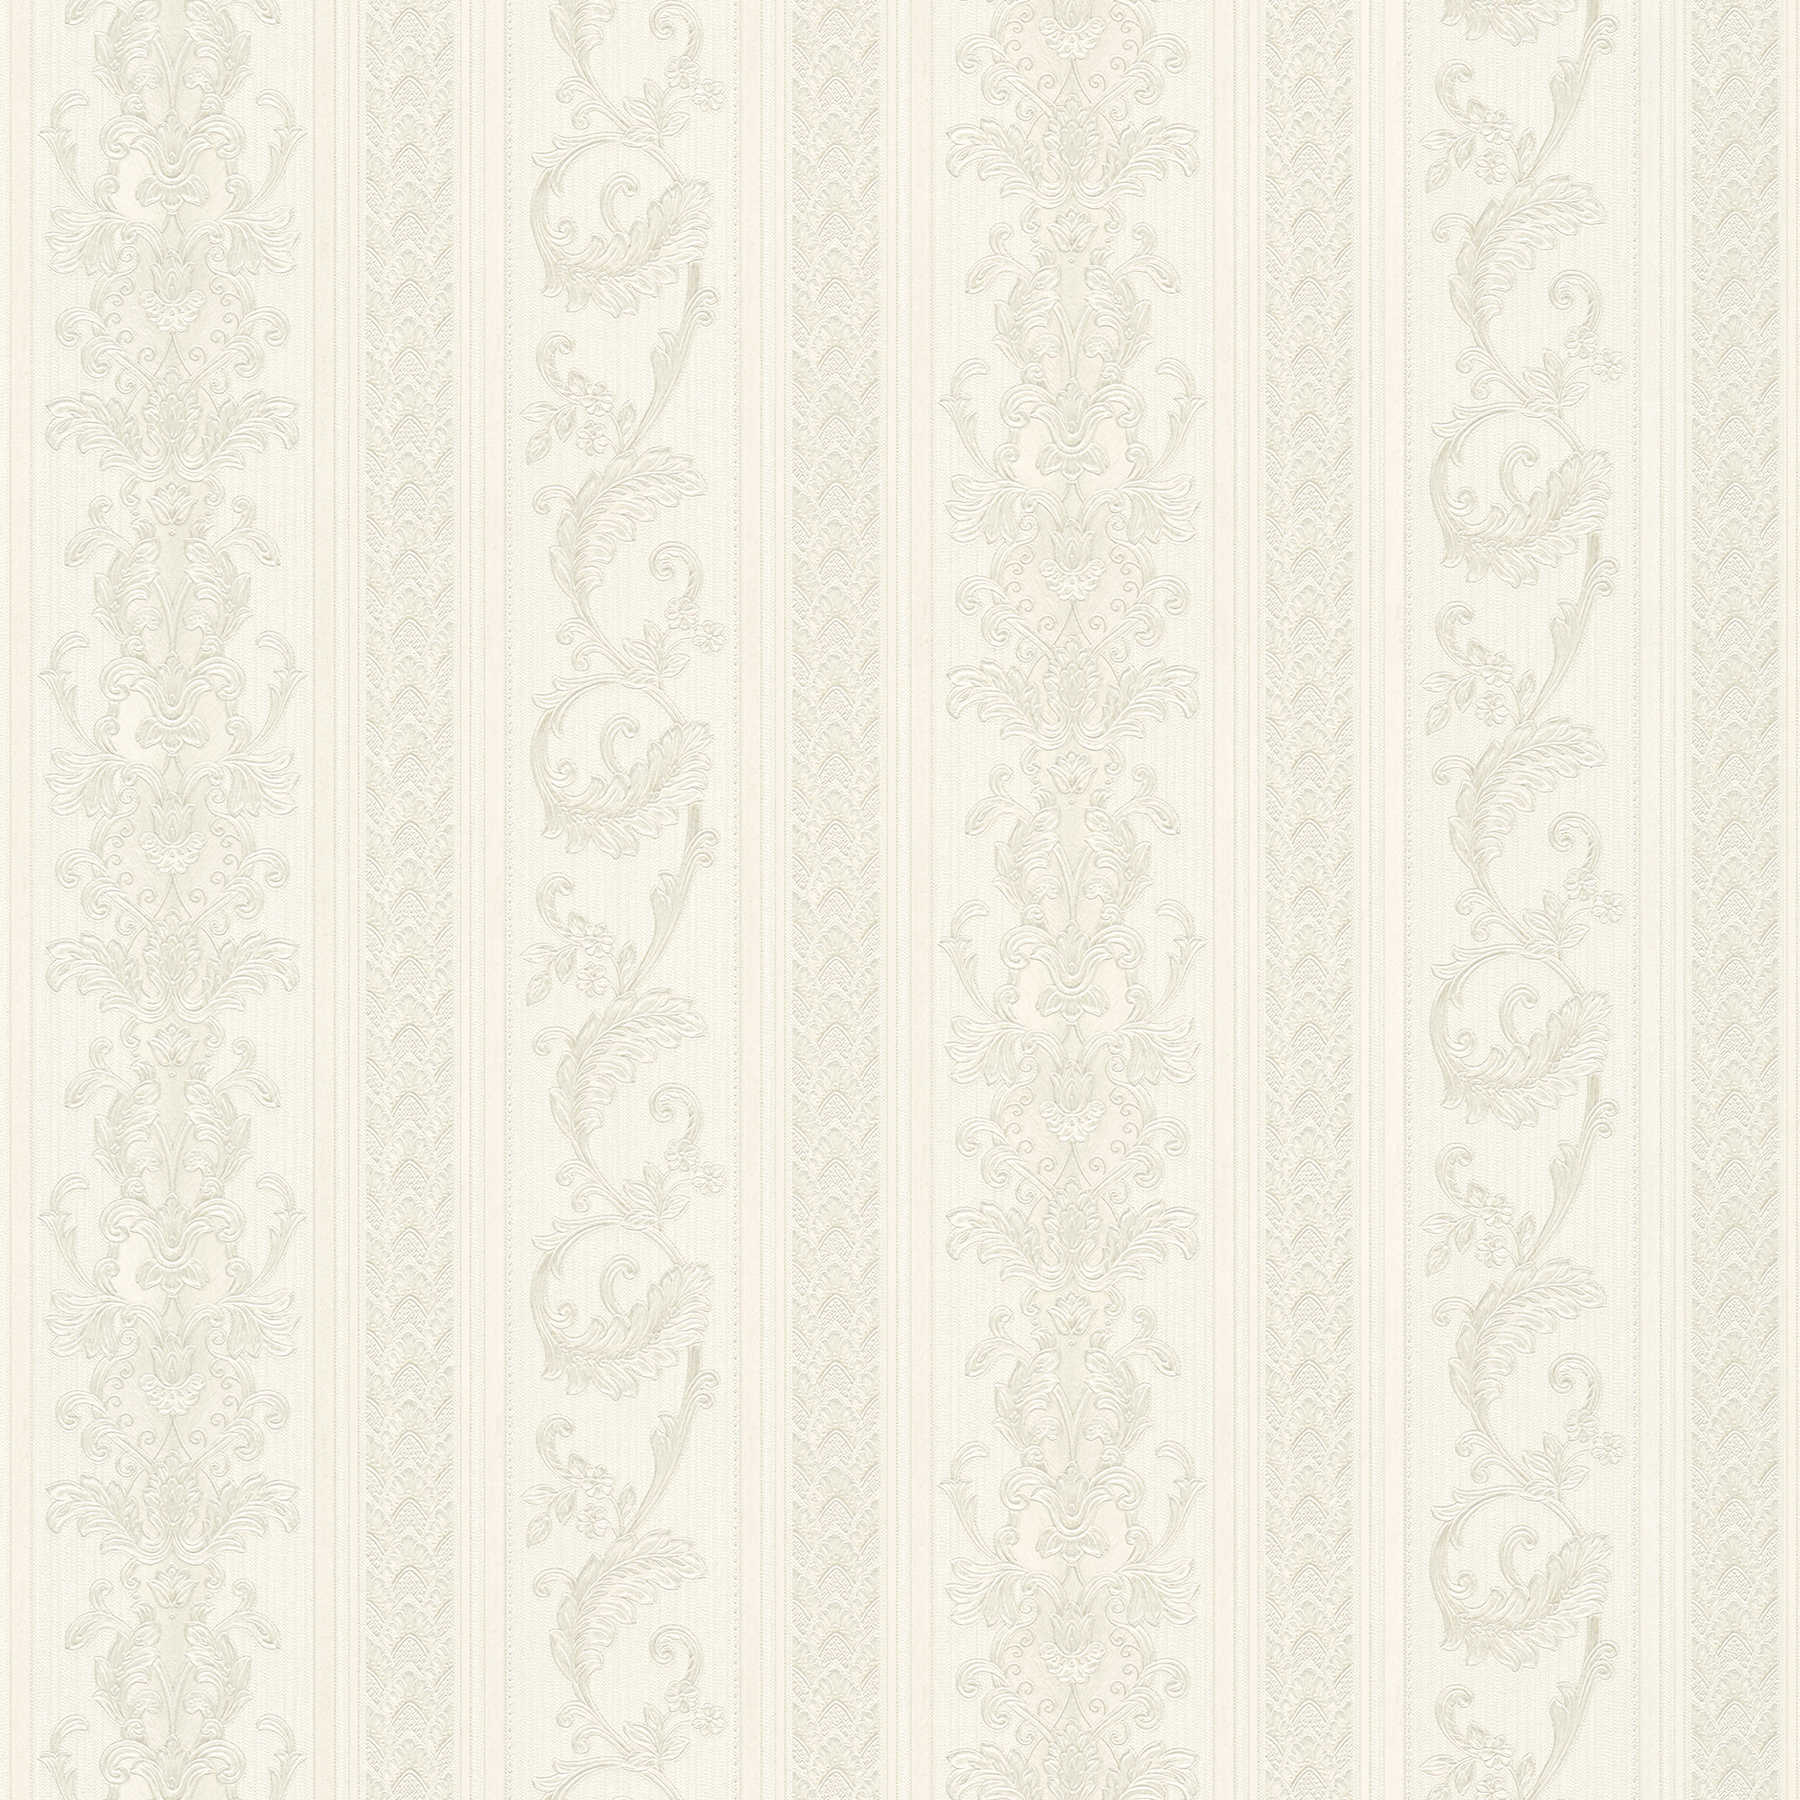         Wallpaper opulent stripe design with ornaments - cream, grey
    